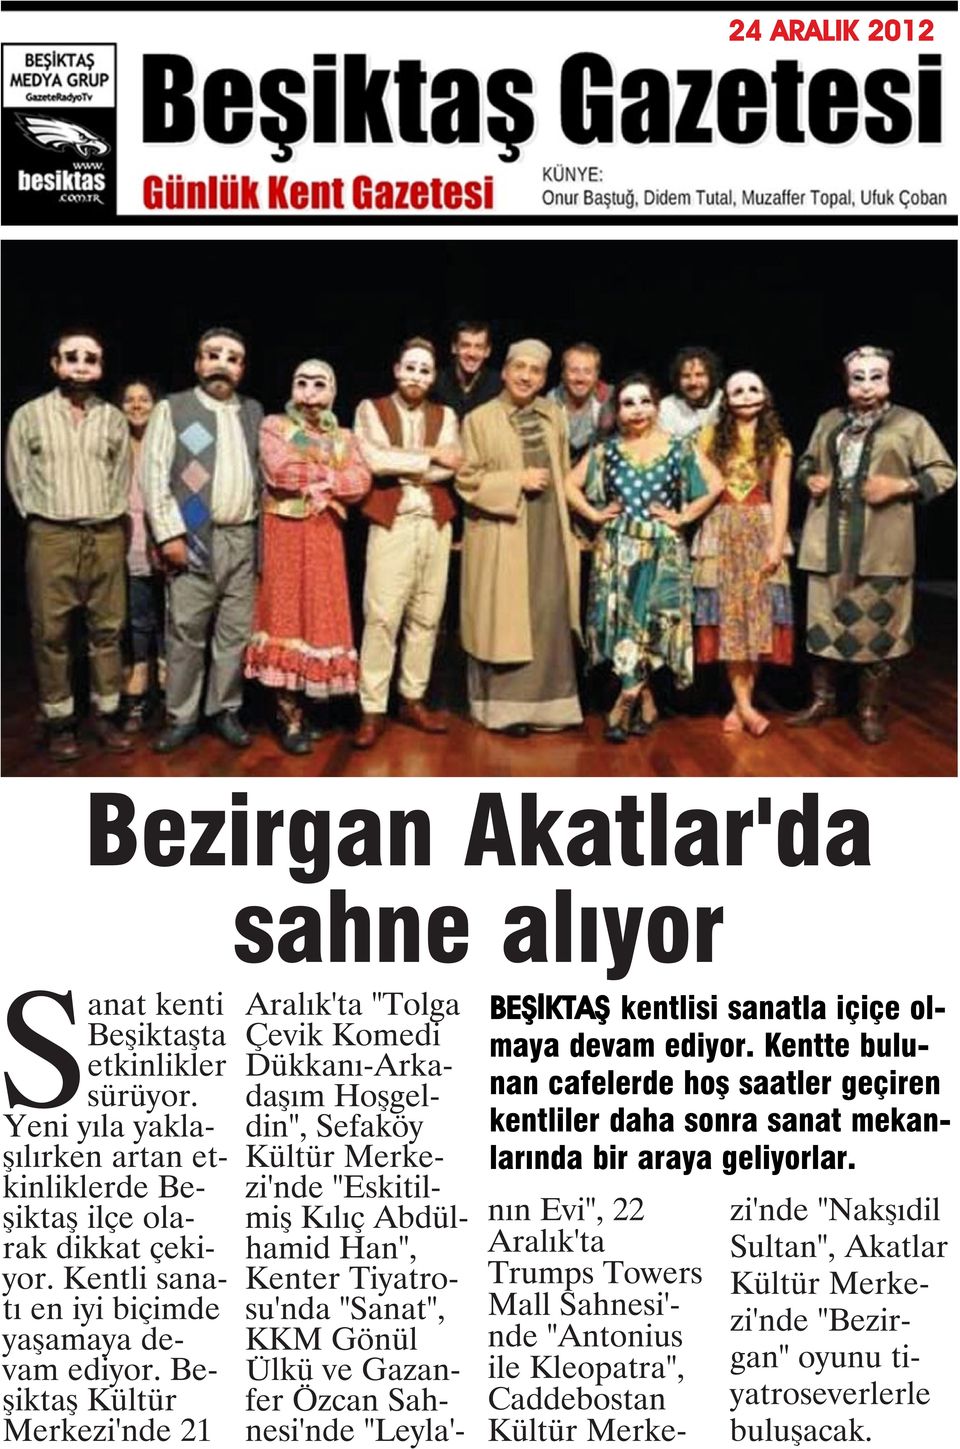 Beşiktaş Kültür Merkezi'nde 21 Aralık'ta "Tolga Çevik Komedi Dükkanı-Arkadaşım Hoşgeldin", Sefaköy Kültür Merkezi'nde "Eskitilmiş Kılıç Abdülhamid Han", Kenter Tiyatrosu'nda "Sanat", KKM Gönül Ülkü